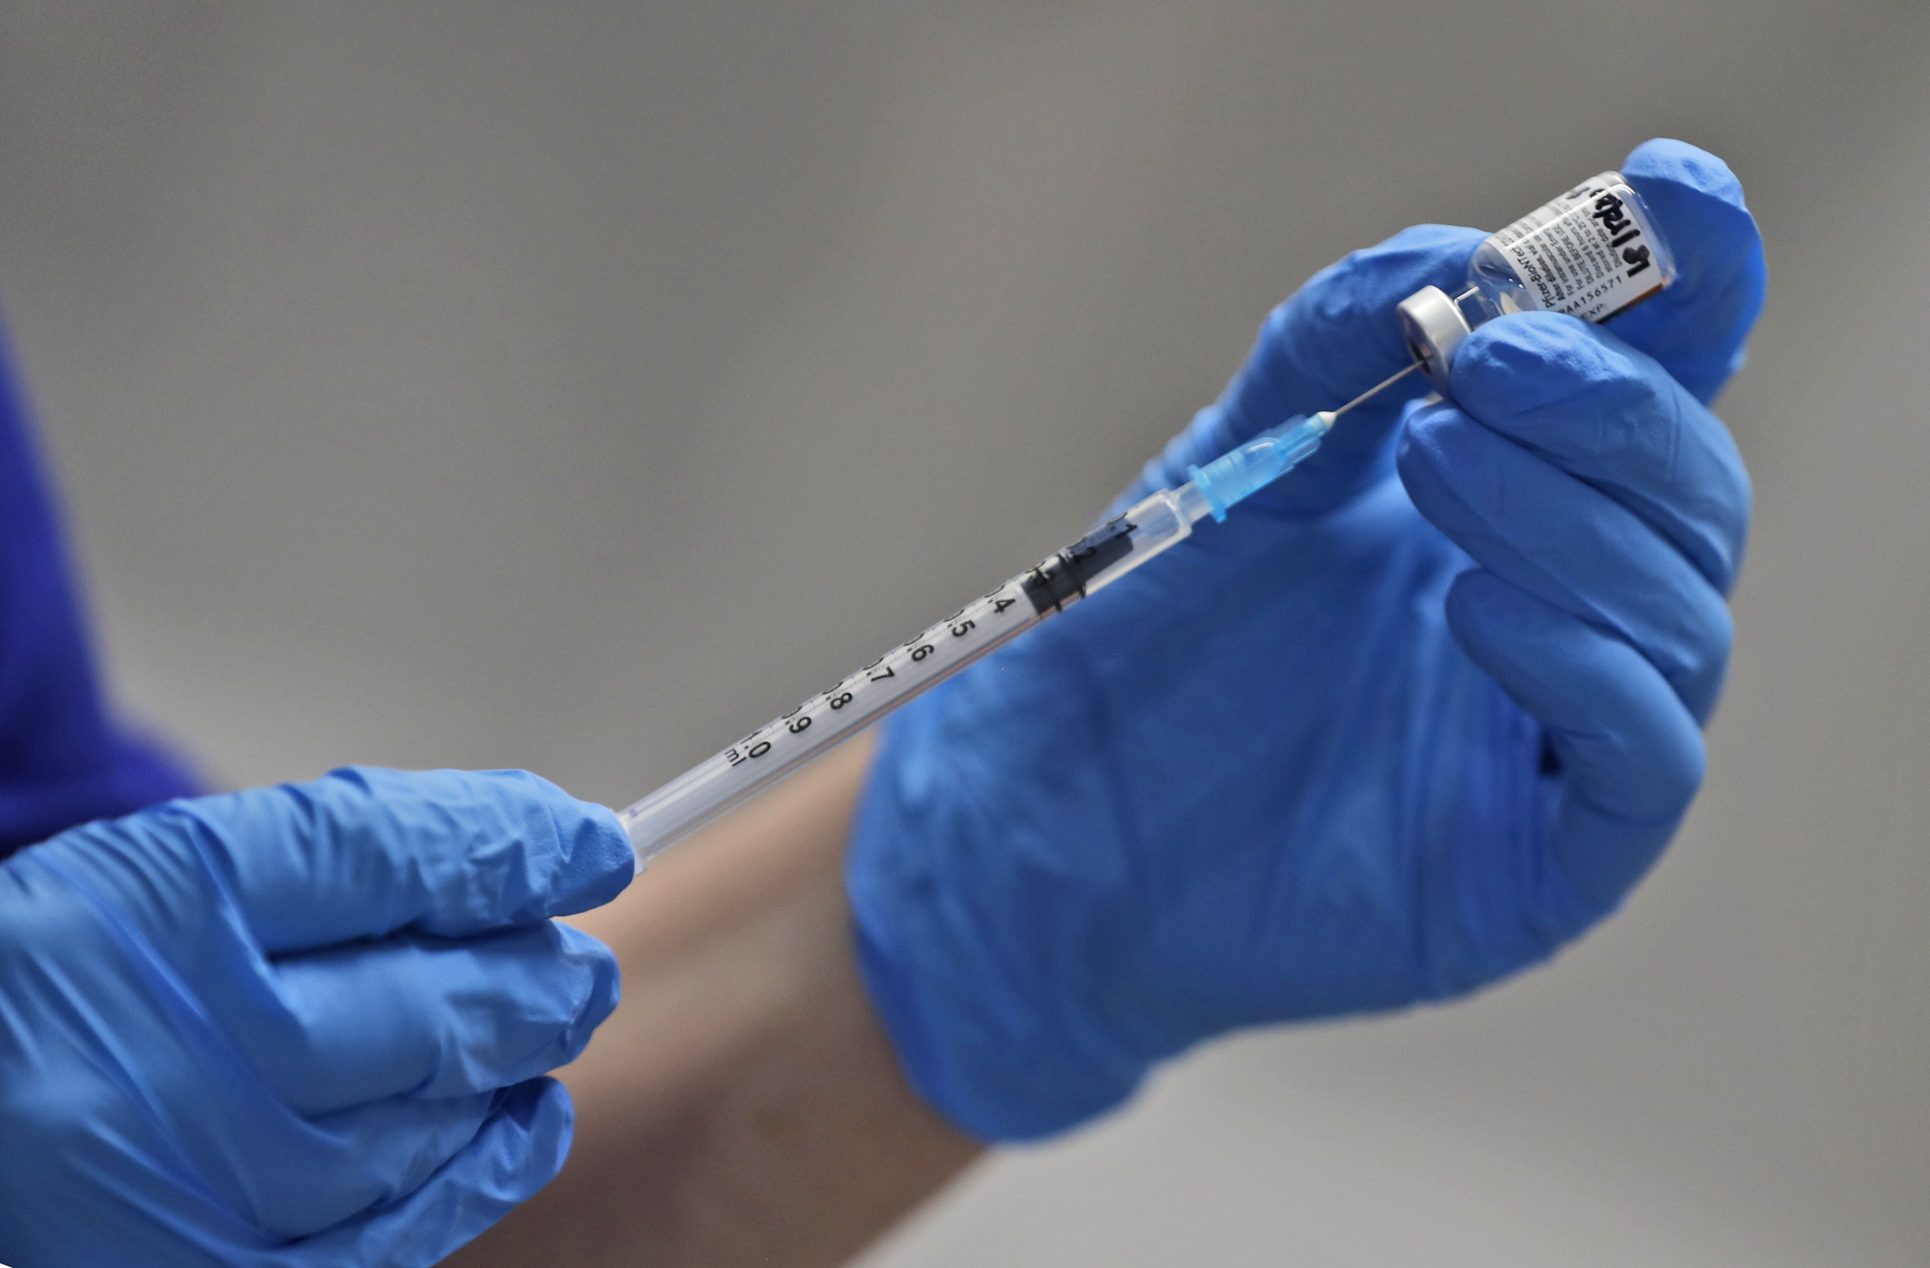 Tres menores hospitalizados por posible vacunación involuntaria contra covid-19, informa CCSS